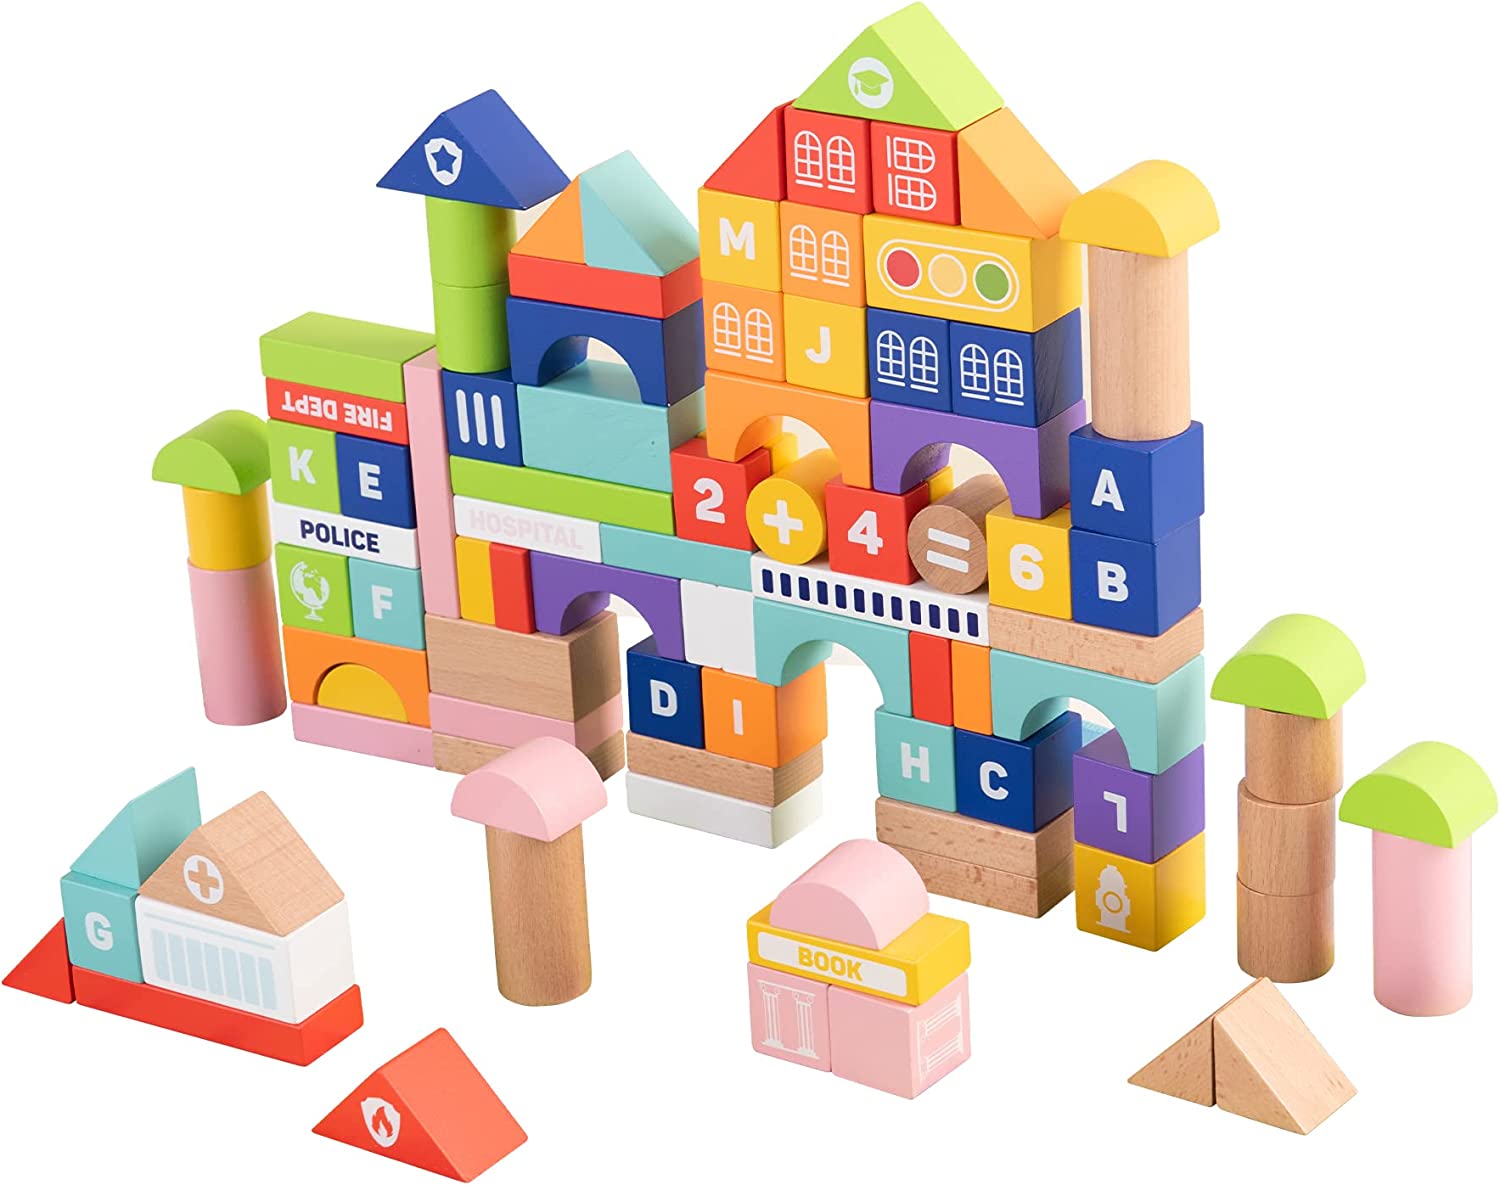 Woodenland-100 piezas de bloques de construcción de madera para niños pequeños